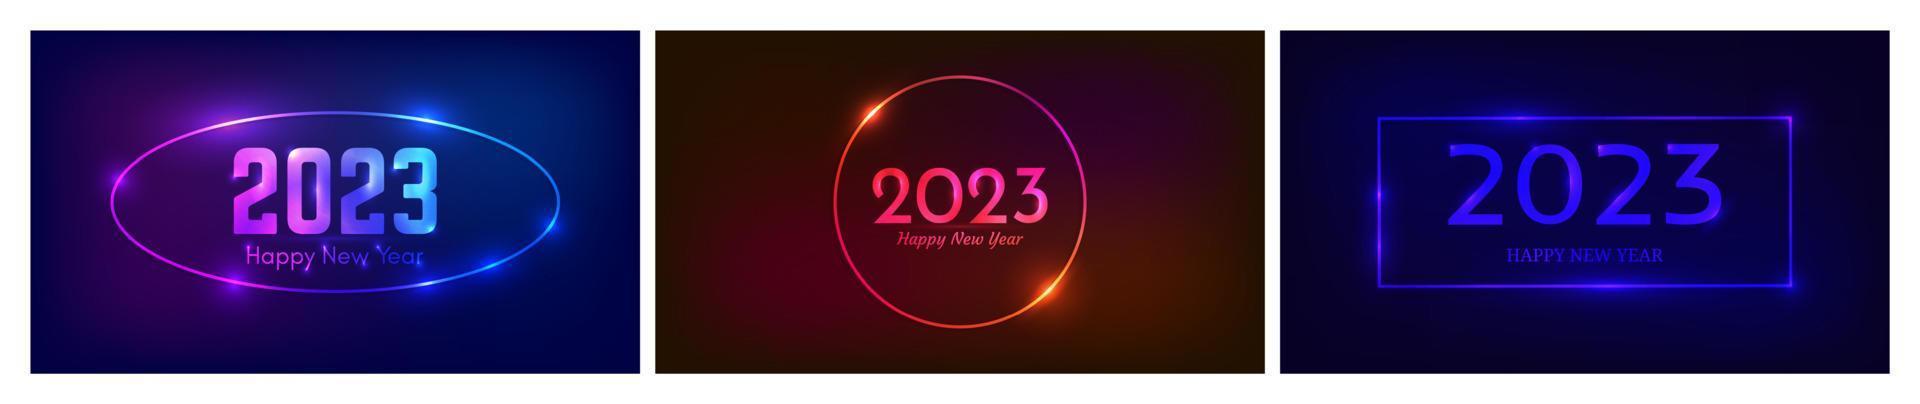 2023 feliz año nuevo fondo de neón. conjunto de tres fondos de neón con diferentes marcos geométricos con efectos brillantes e inscripción feliz año nuevo. fondo oscuro para navidad vector